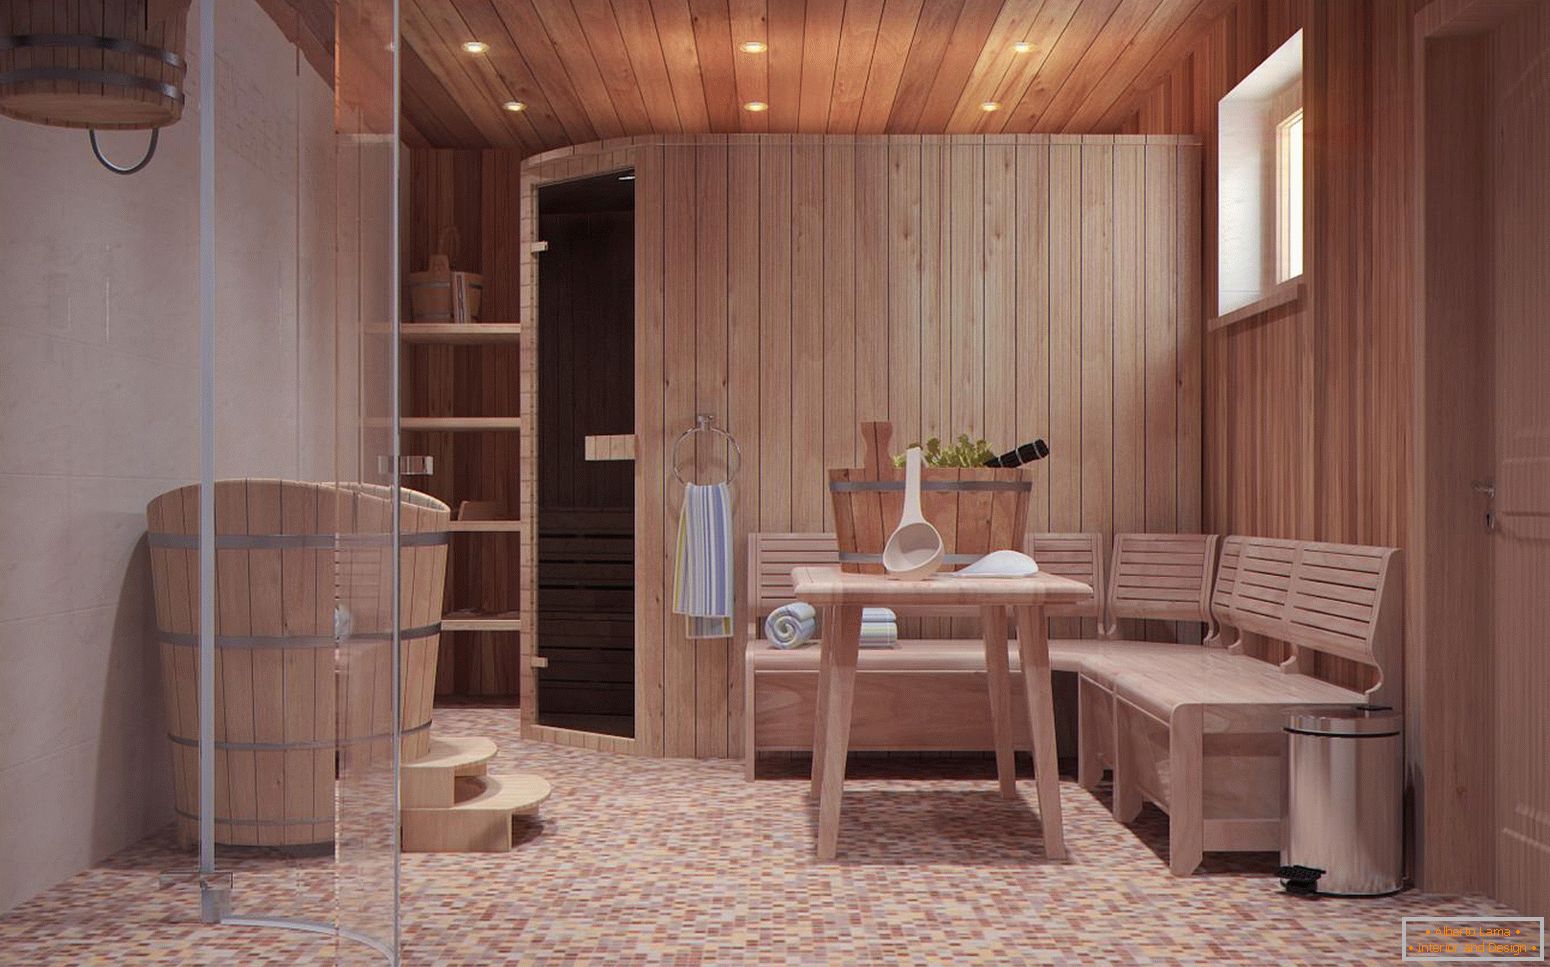 Ein Entspannungsraum in einem Badehaus im skandinavischen Stil